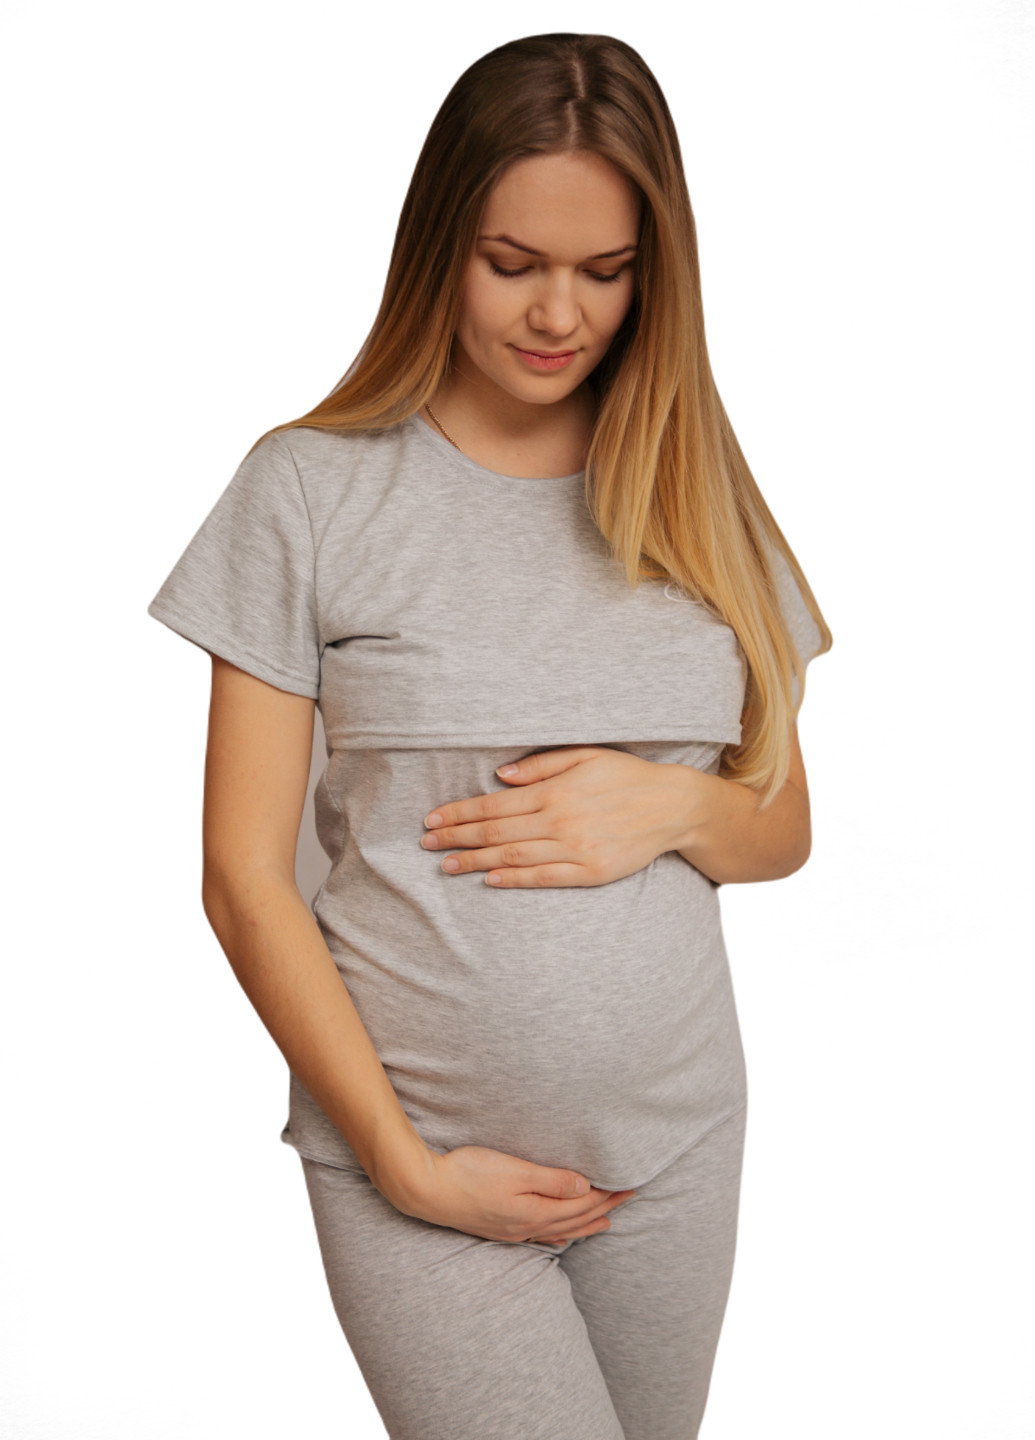 Серая всесезон 88296038829(55)03 пижама для беременных и кормящих с секретом для кормления (футболка + брюки) серая футболка + брюки HN Рита